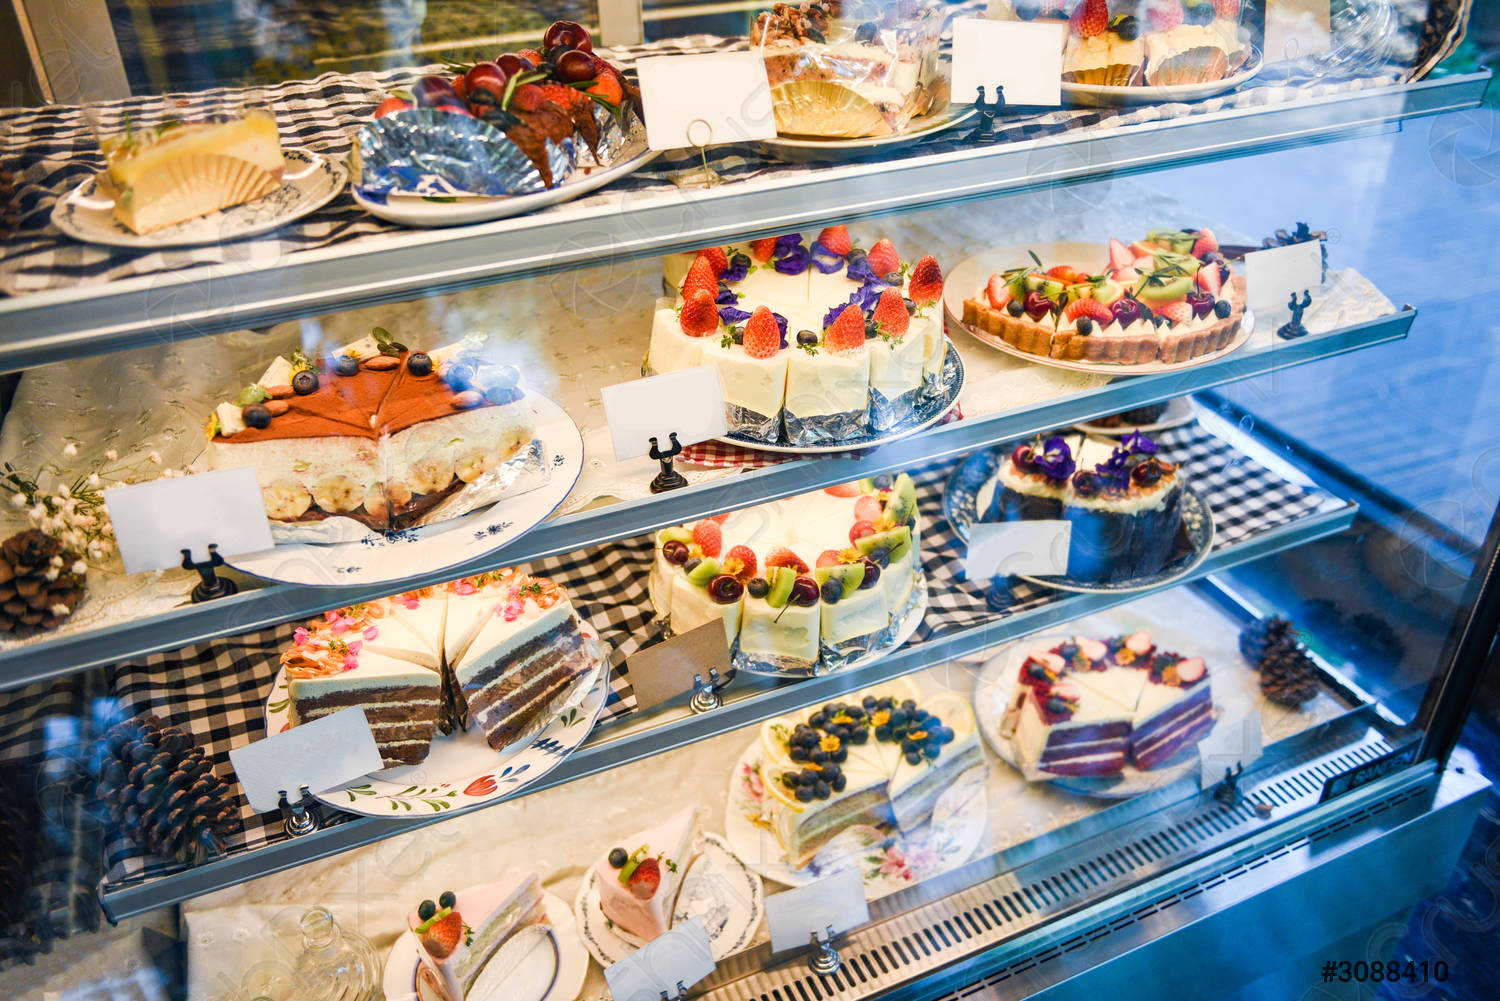 Tủ mát không chỉ giúp trưng bày bánh đẹp mắt mà còn khử khuẩn, bảo quản bánh